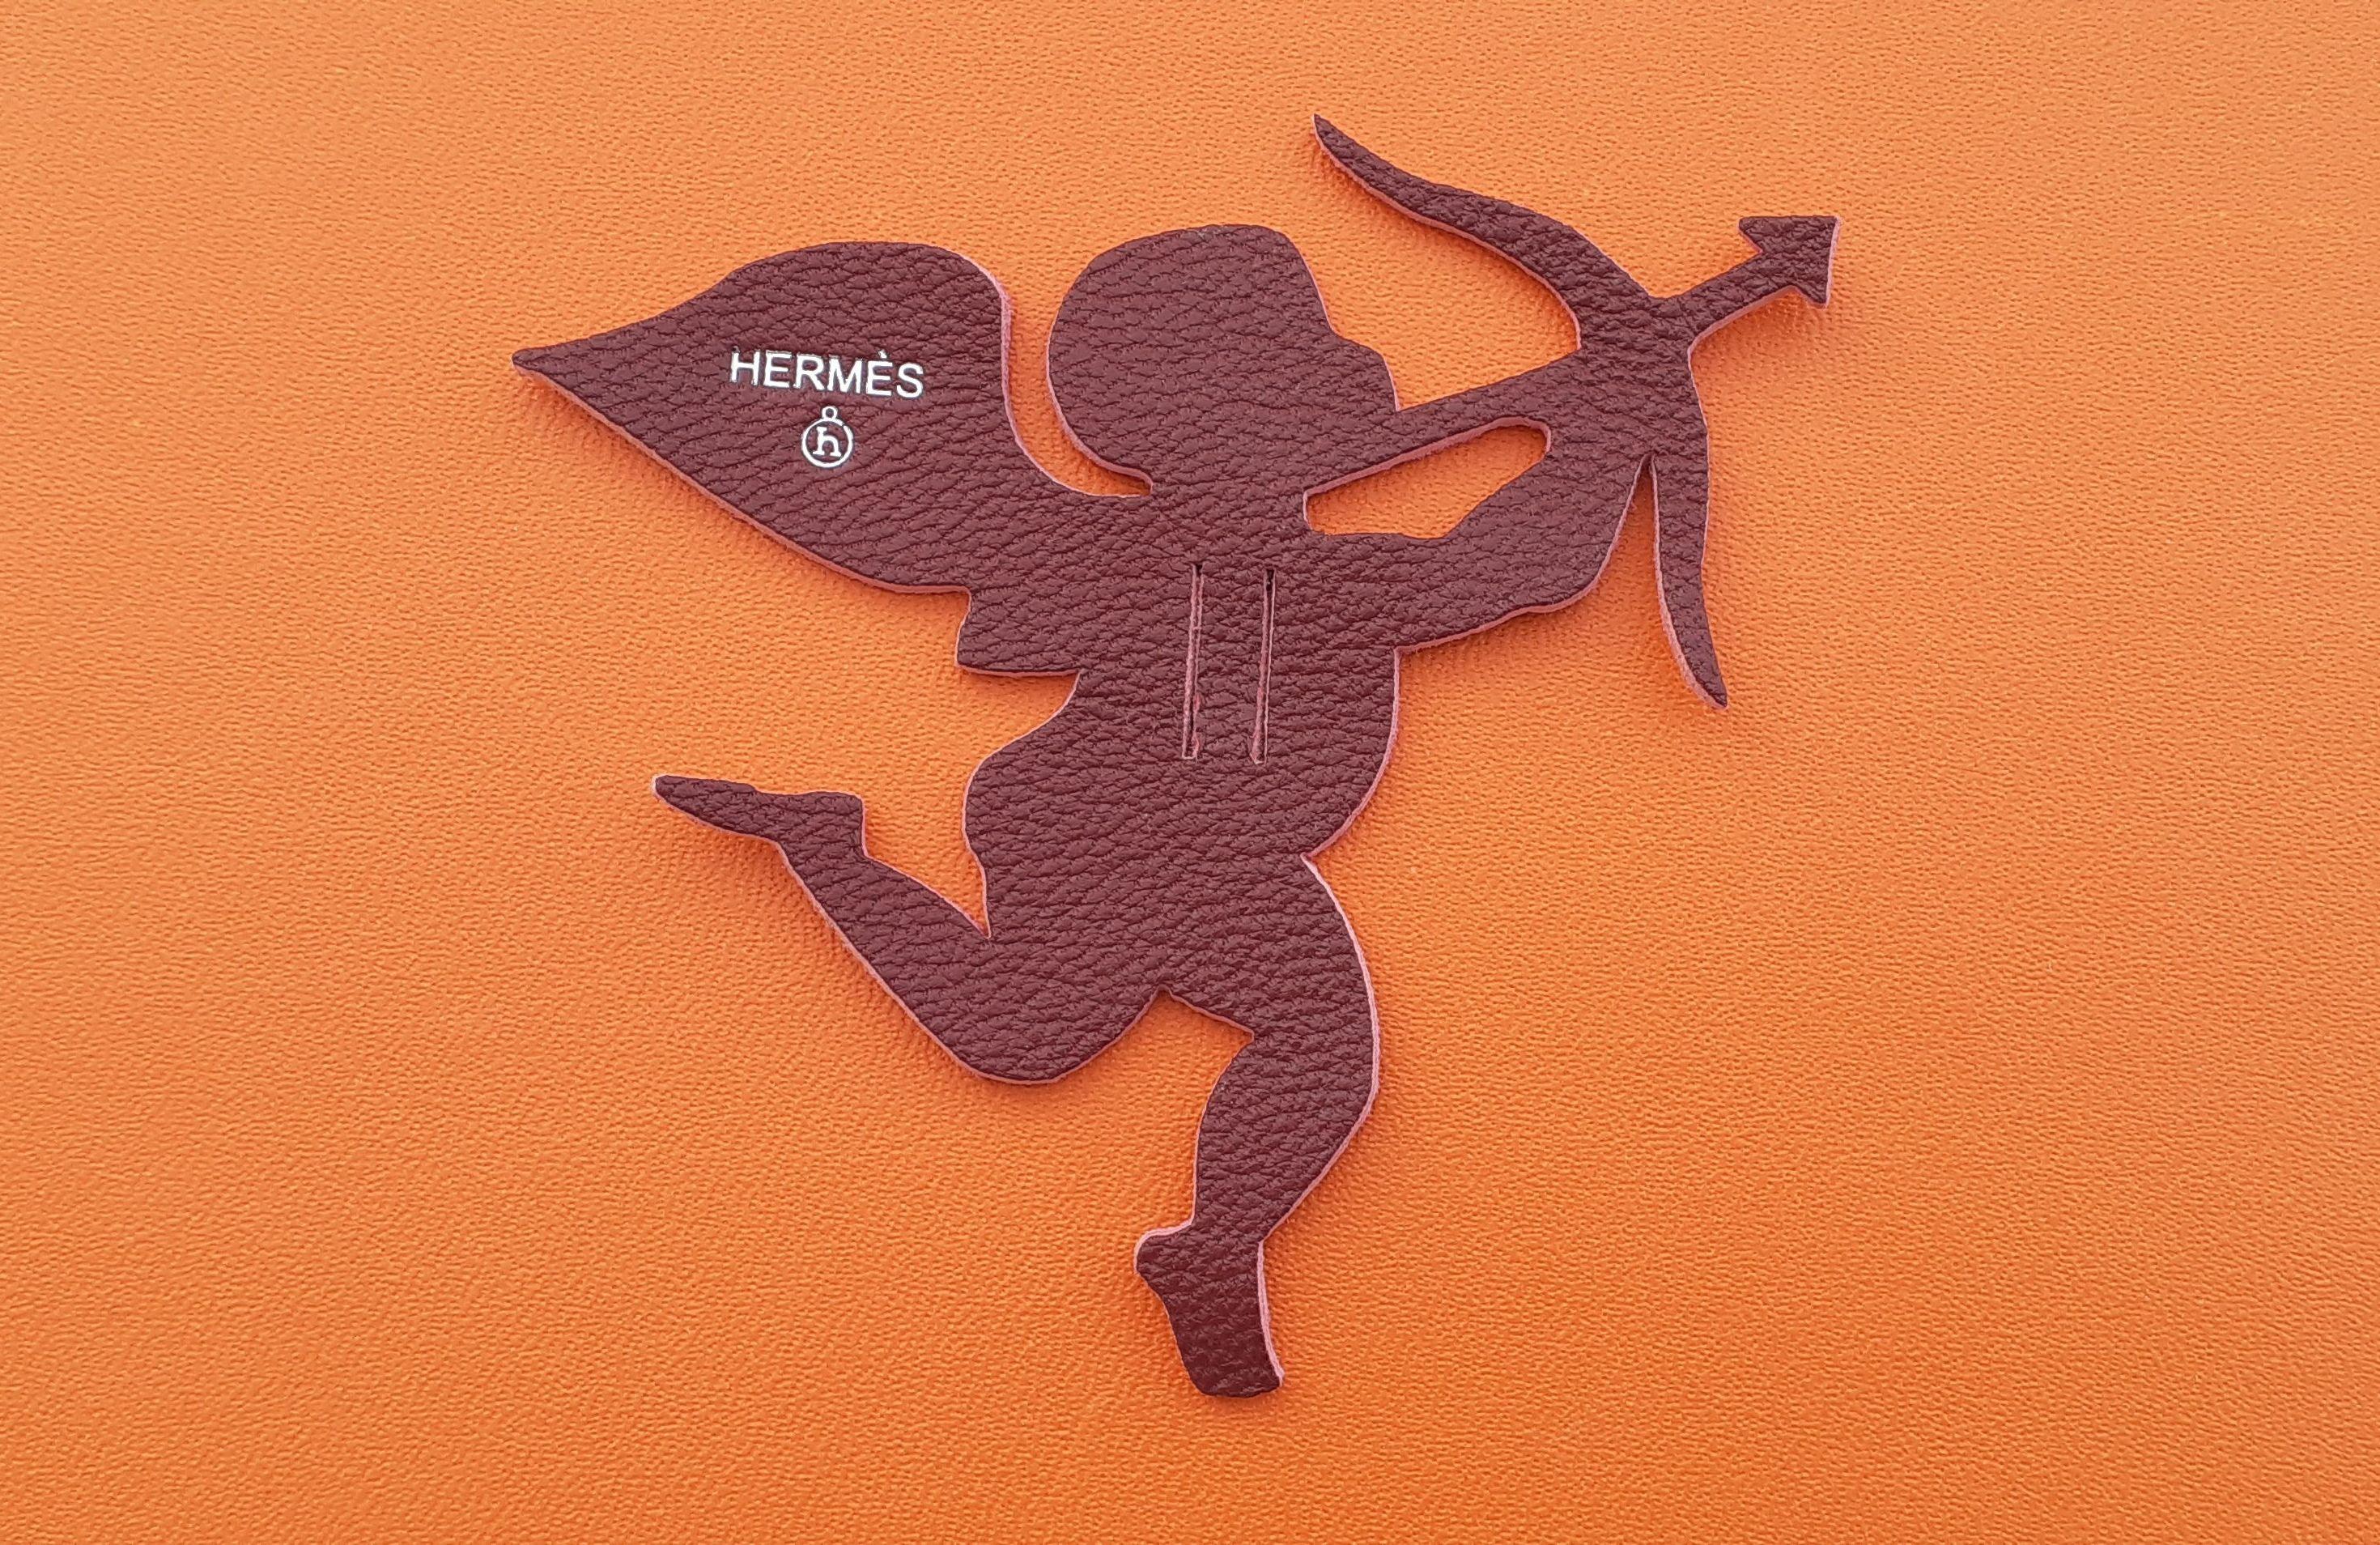 Adorable charme Hermès authentique

En forme de Cupidon

De la collection Petit h

En cuir

Coloris : bordeaux

Ce charme ornait l'emballage d'un petit article h, il n'a donc qu'une seule face

